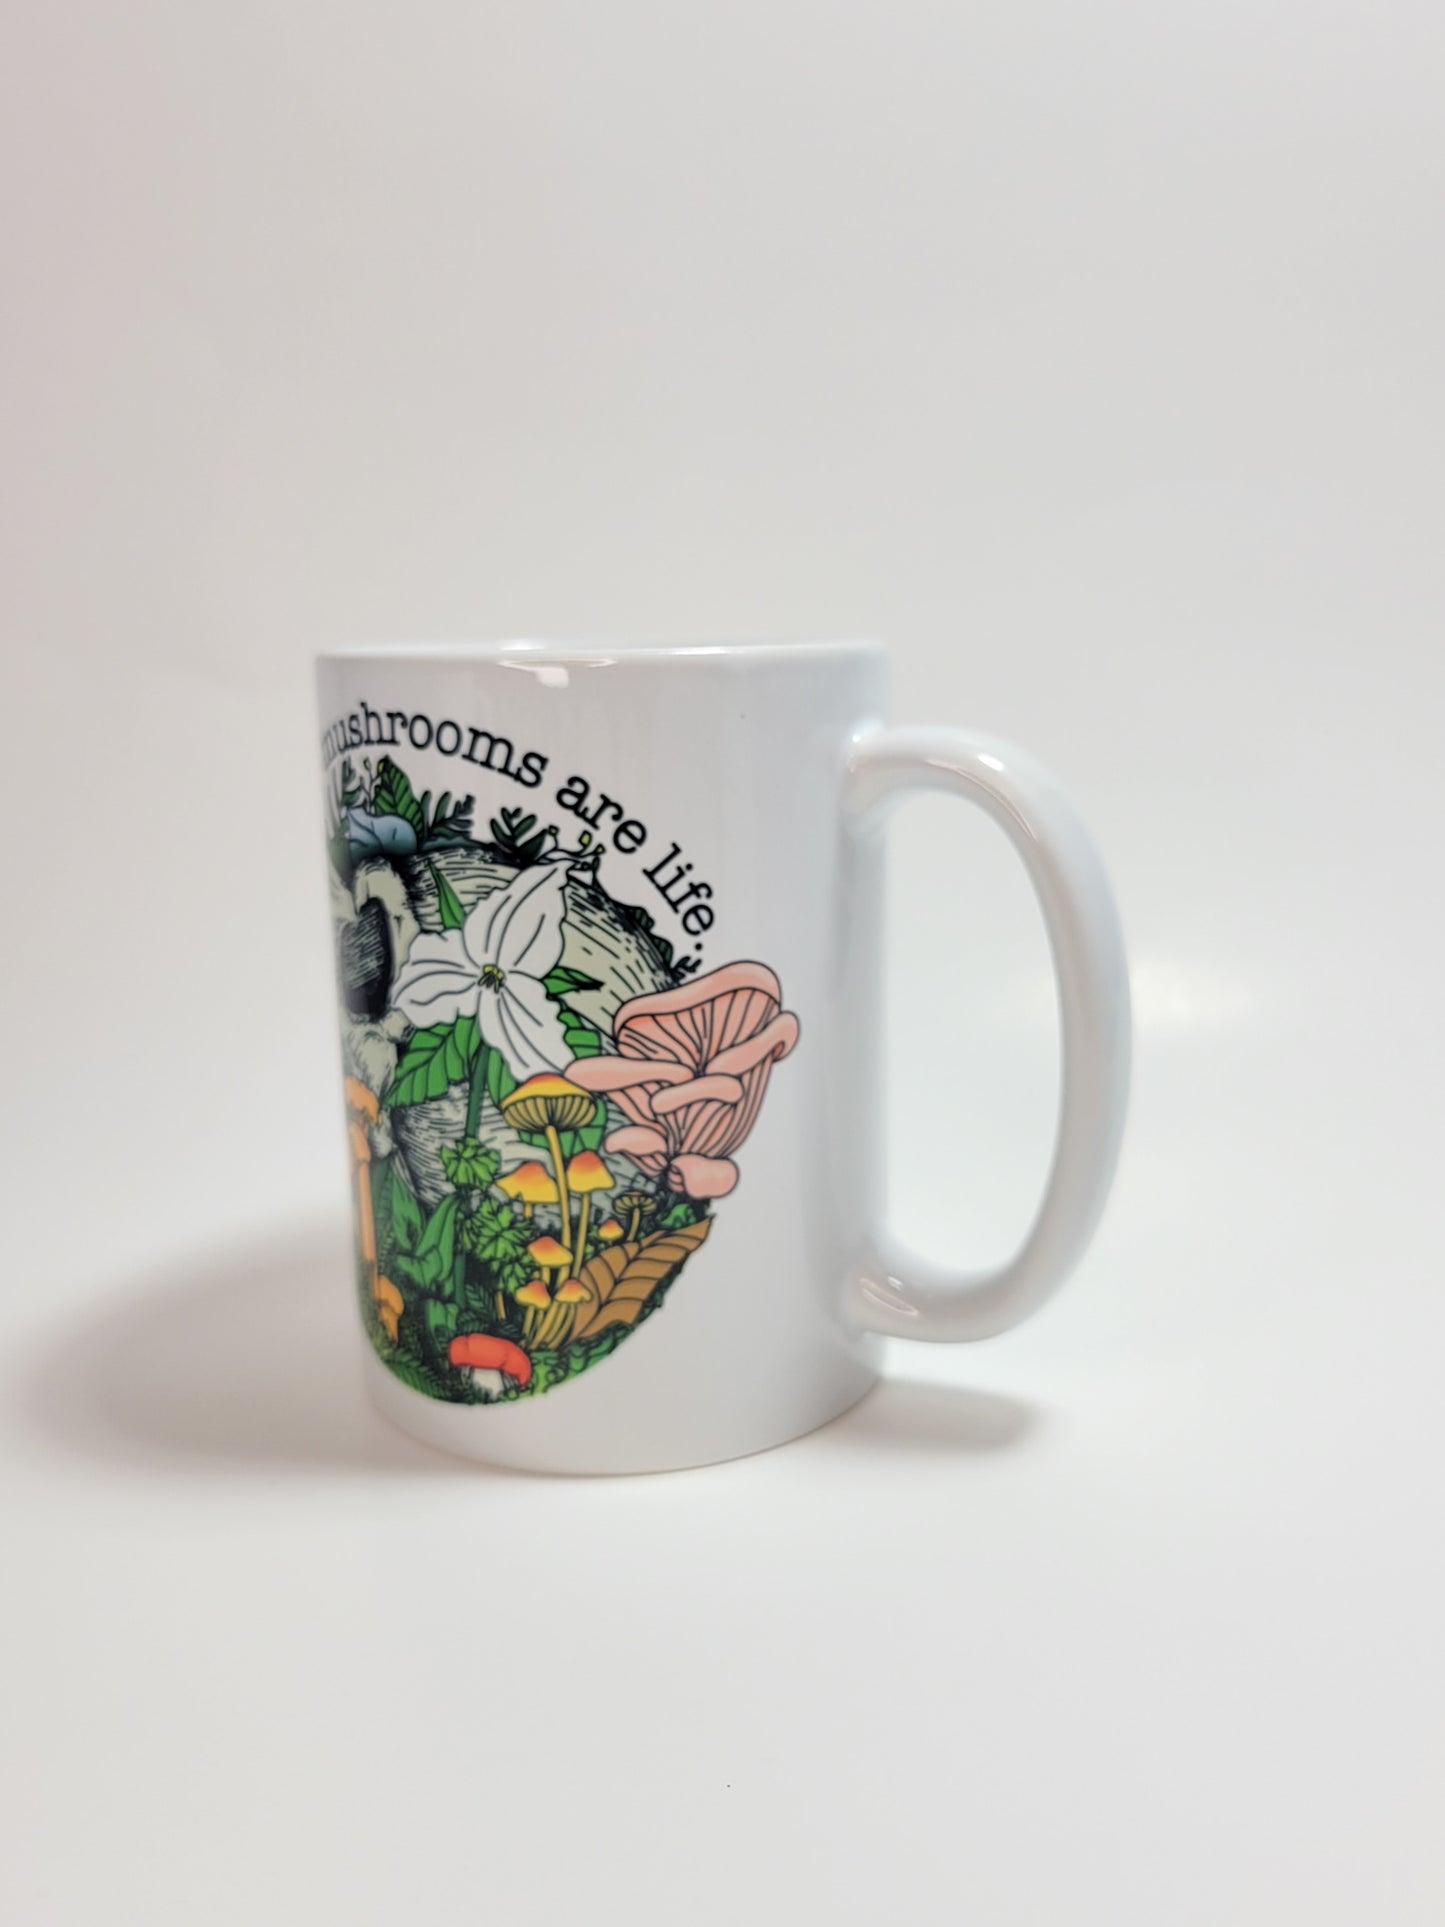 Mushrooms Are Life | Skull, Flowers and Mushroom Artwork on Ceramic Cup | 11oz/15oz Sizes